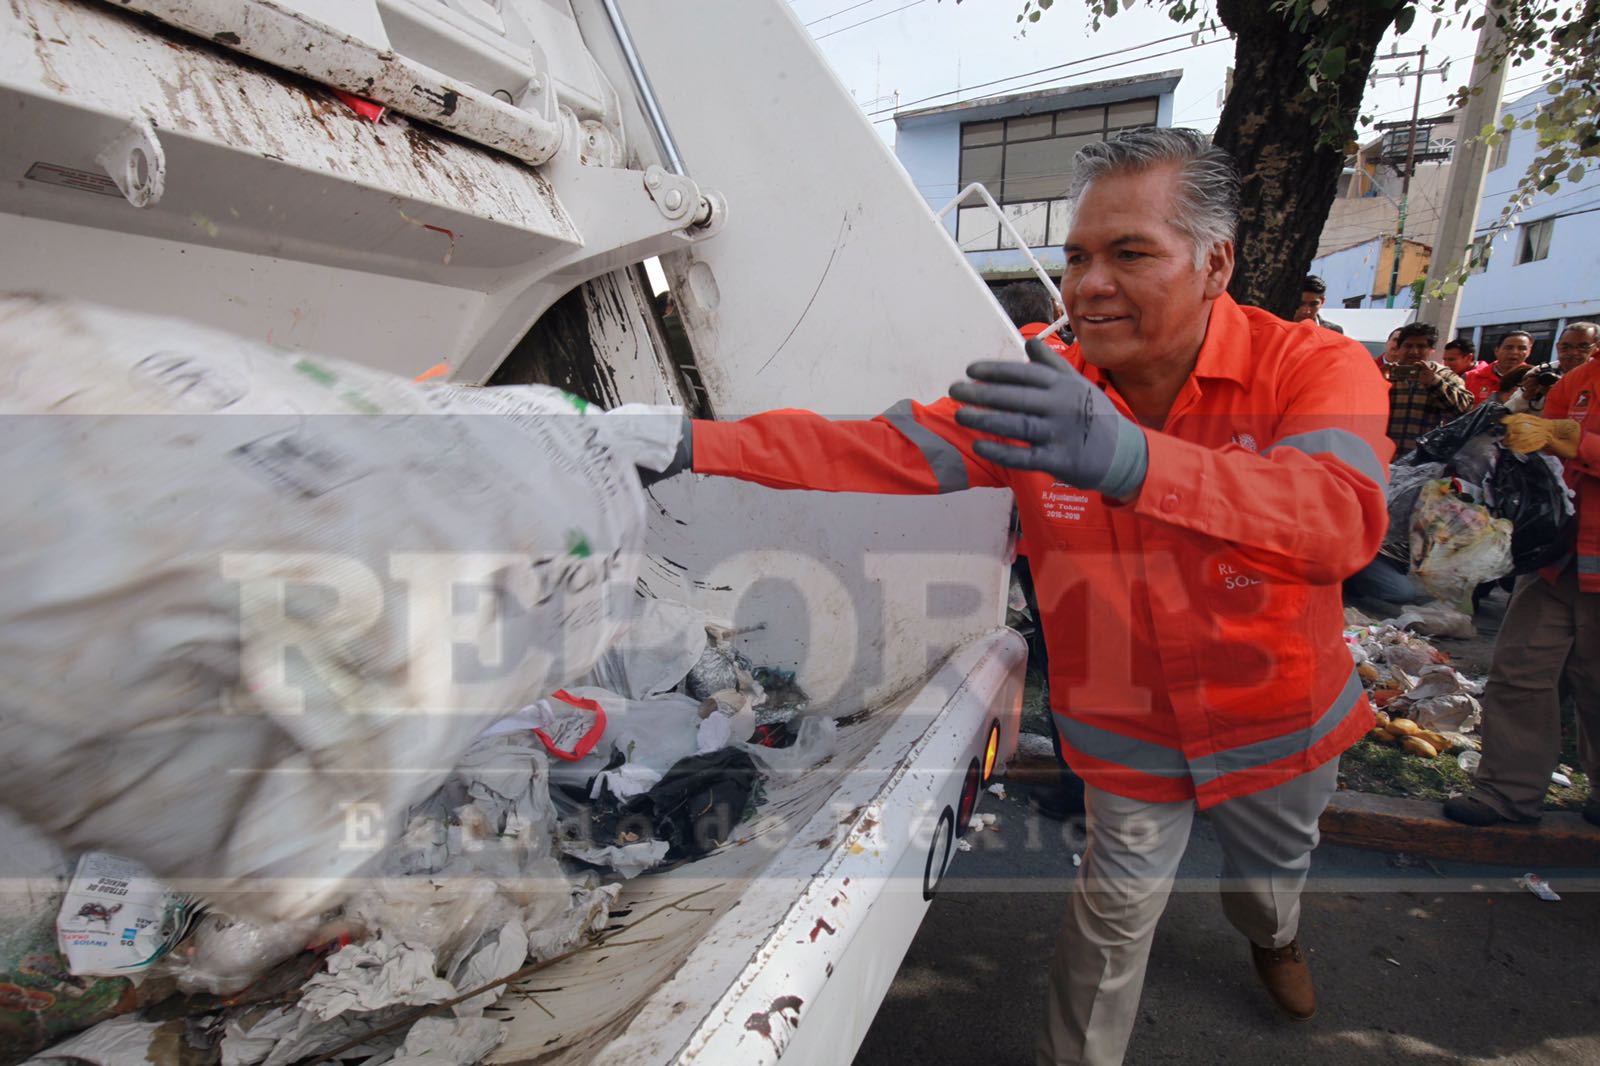 Se sube alcalde de Toluca a camión recolector para retirar basura de las calles